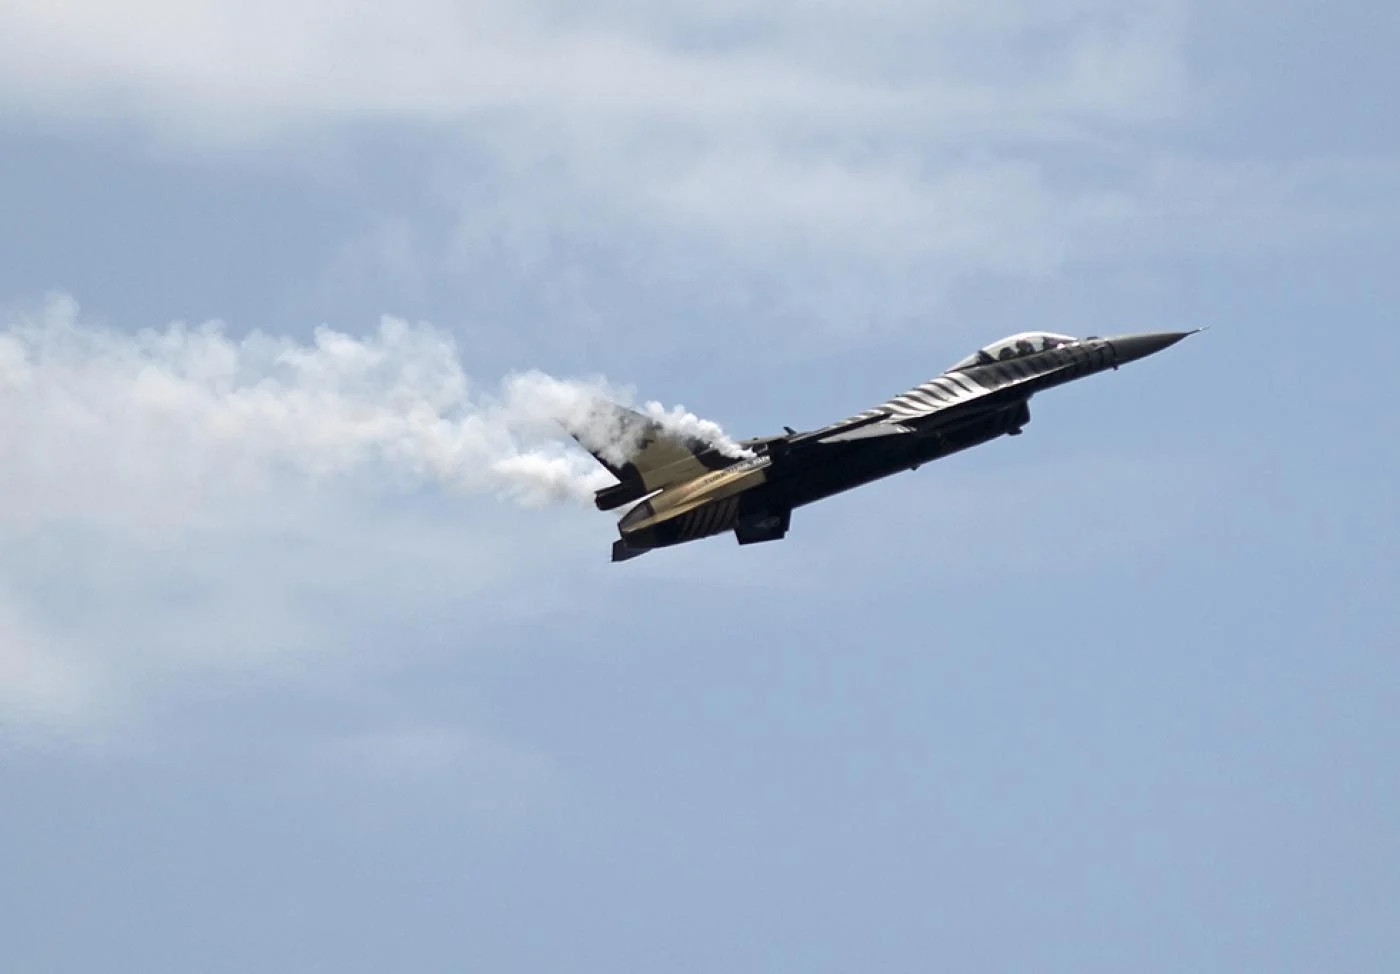 Turchia: Primi attacchi aerei turchi sulla zona curda delle Forze Democratiche Siriane (SDF) in Siria